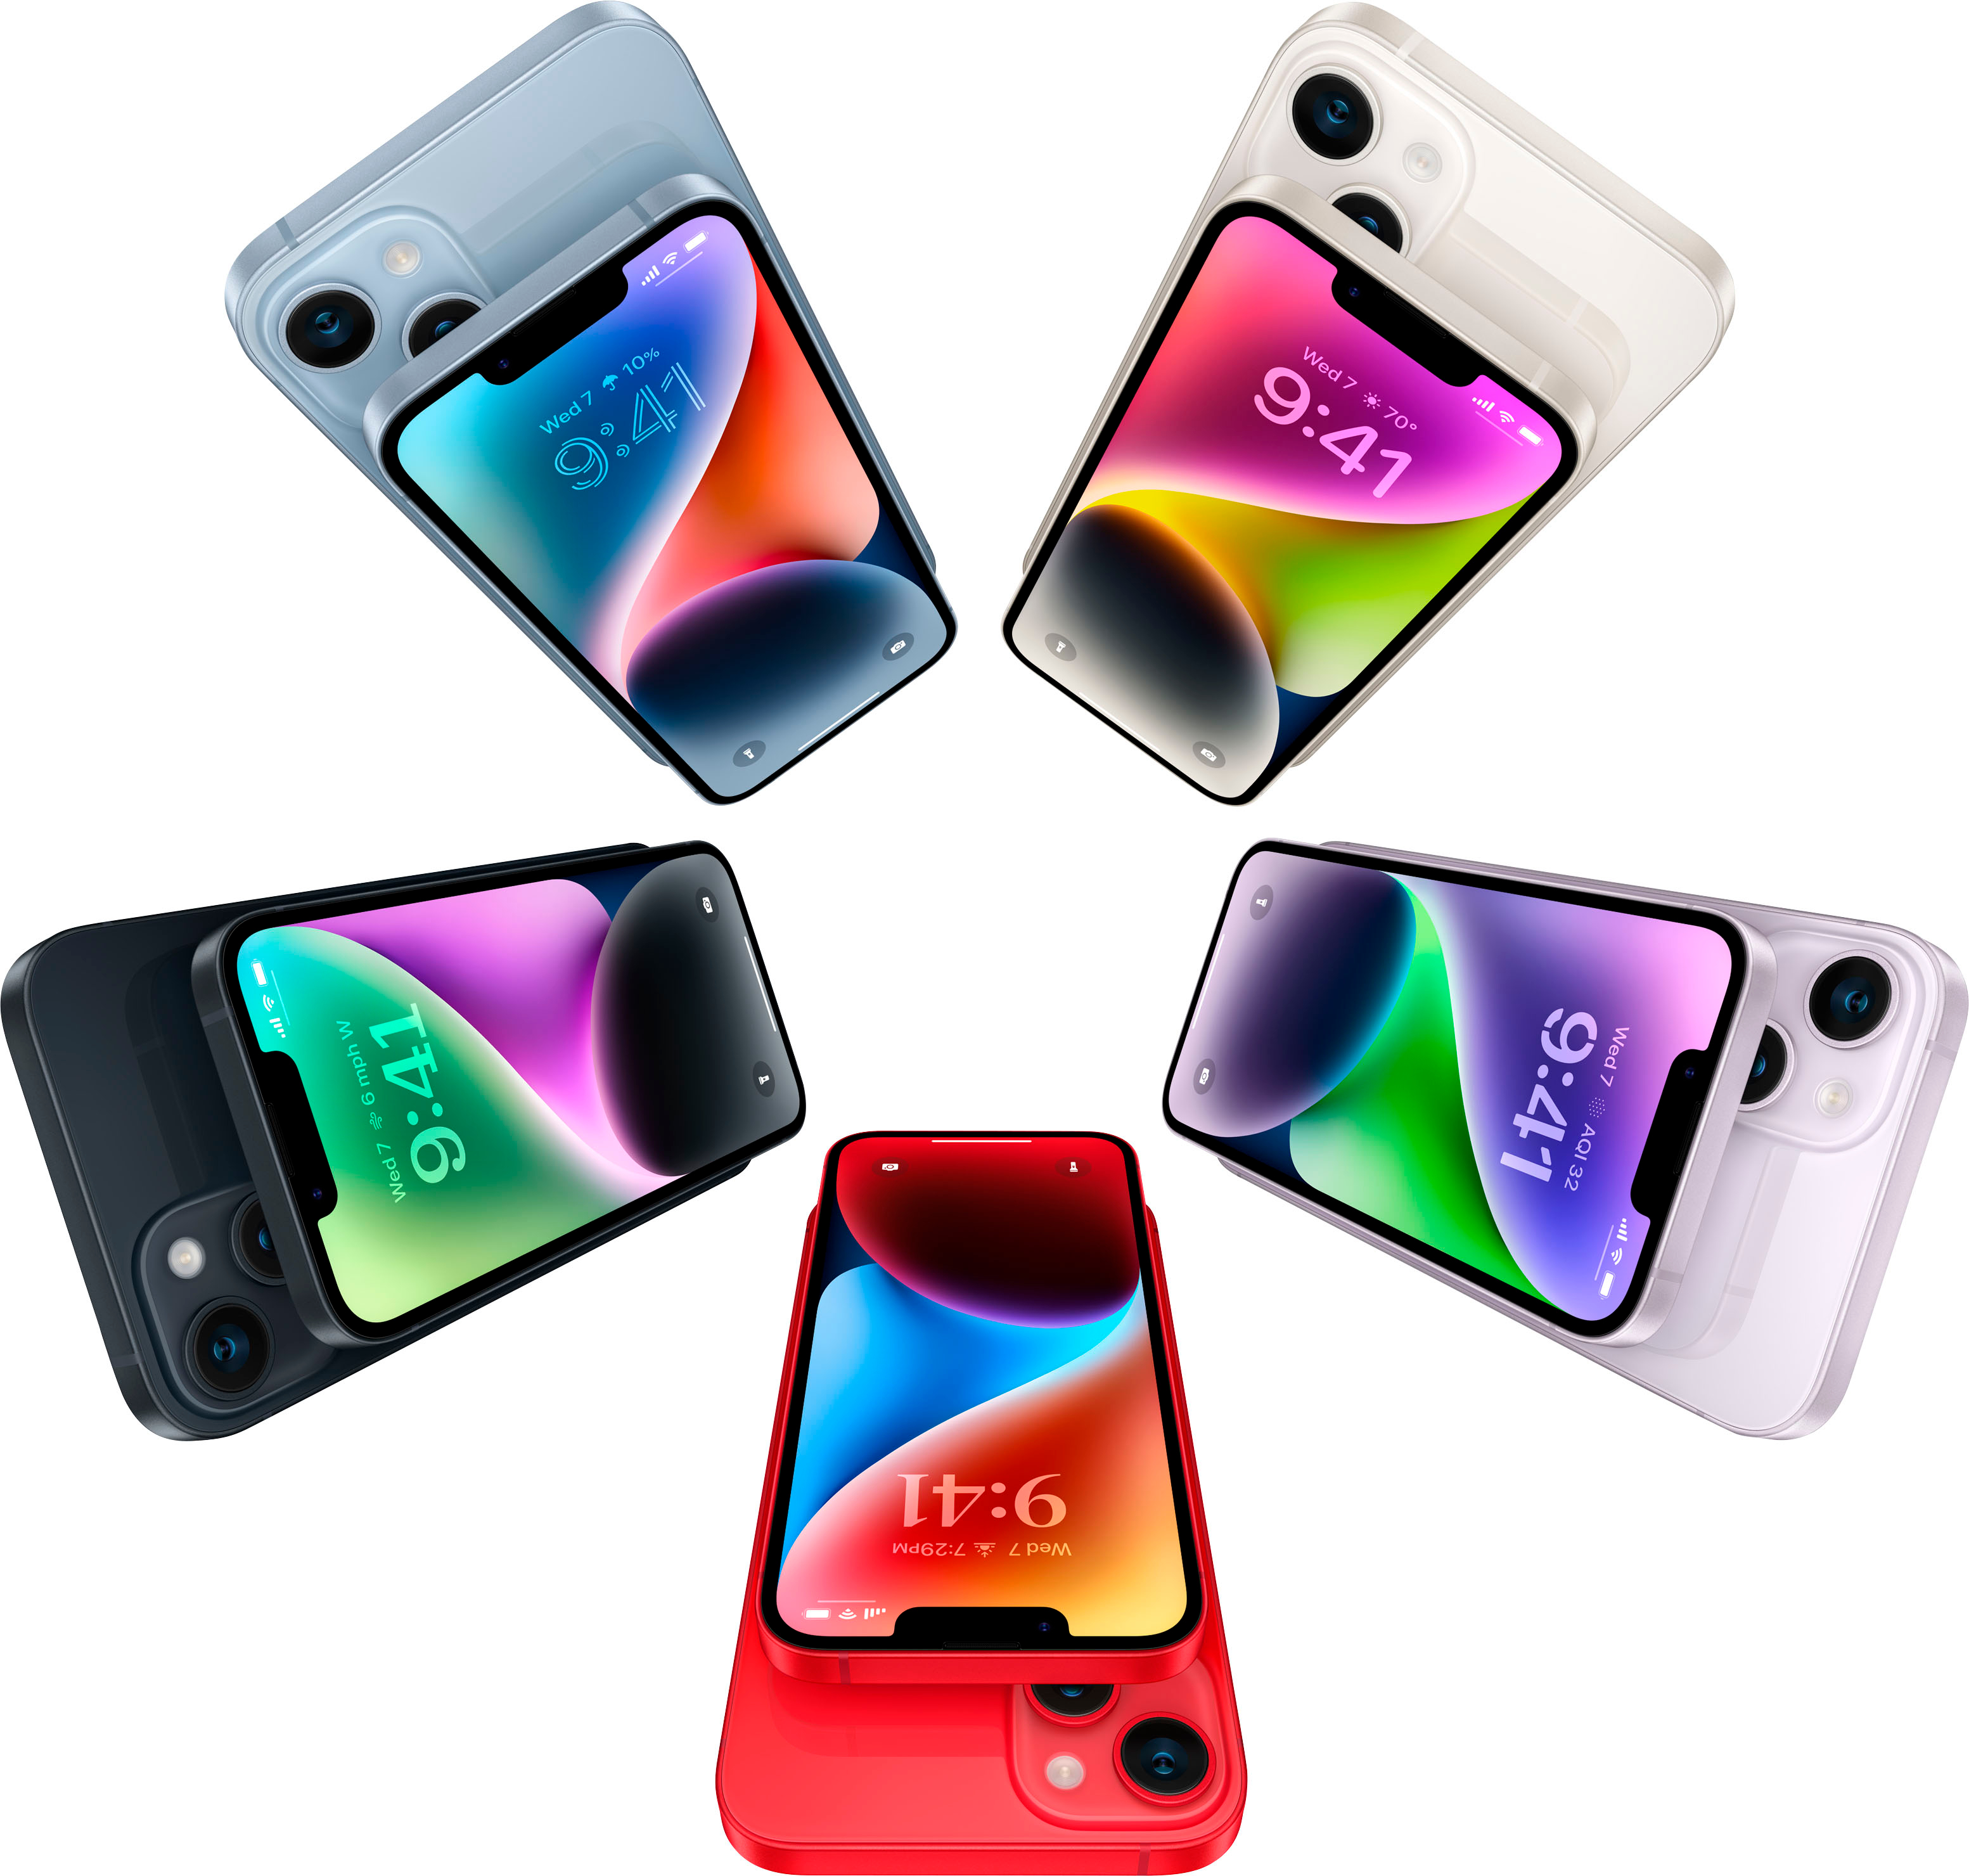 Apple iPhone 14 Pro Max 128GB Deep Purple (Verizon) MQ8R3LL/A - Best Buy